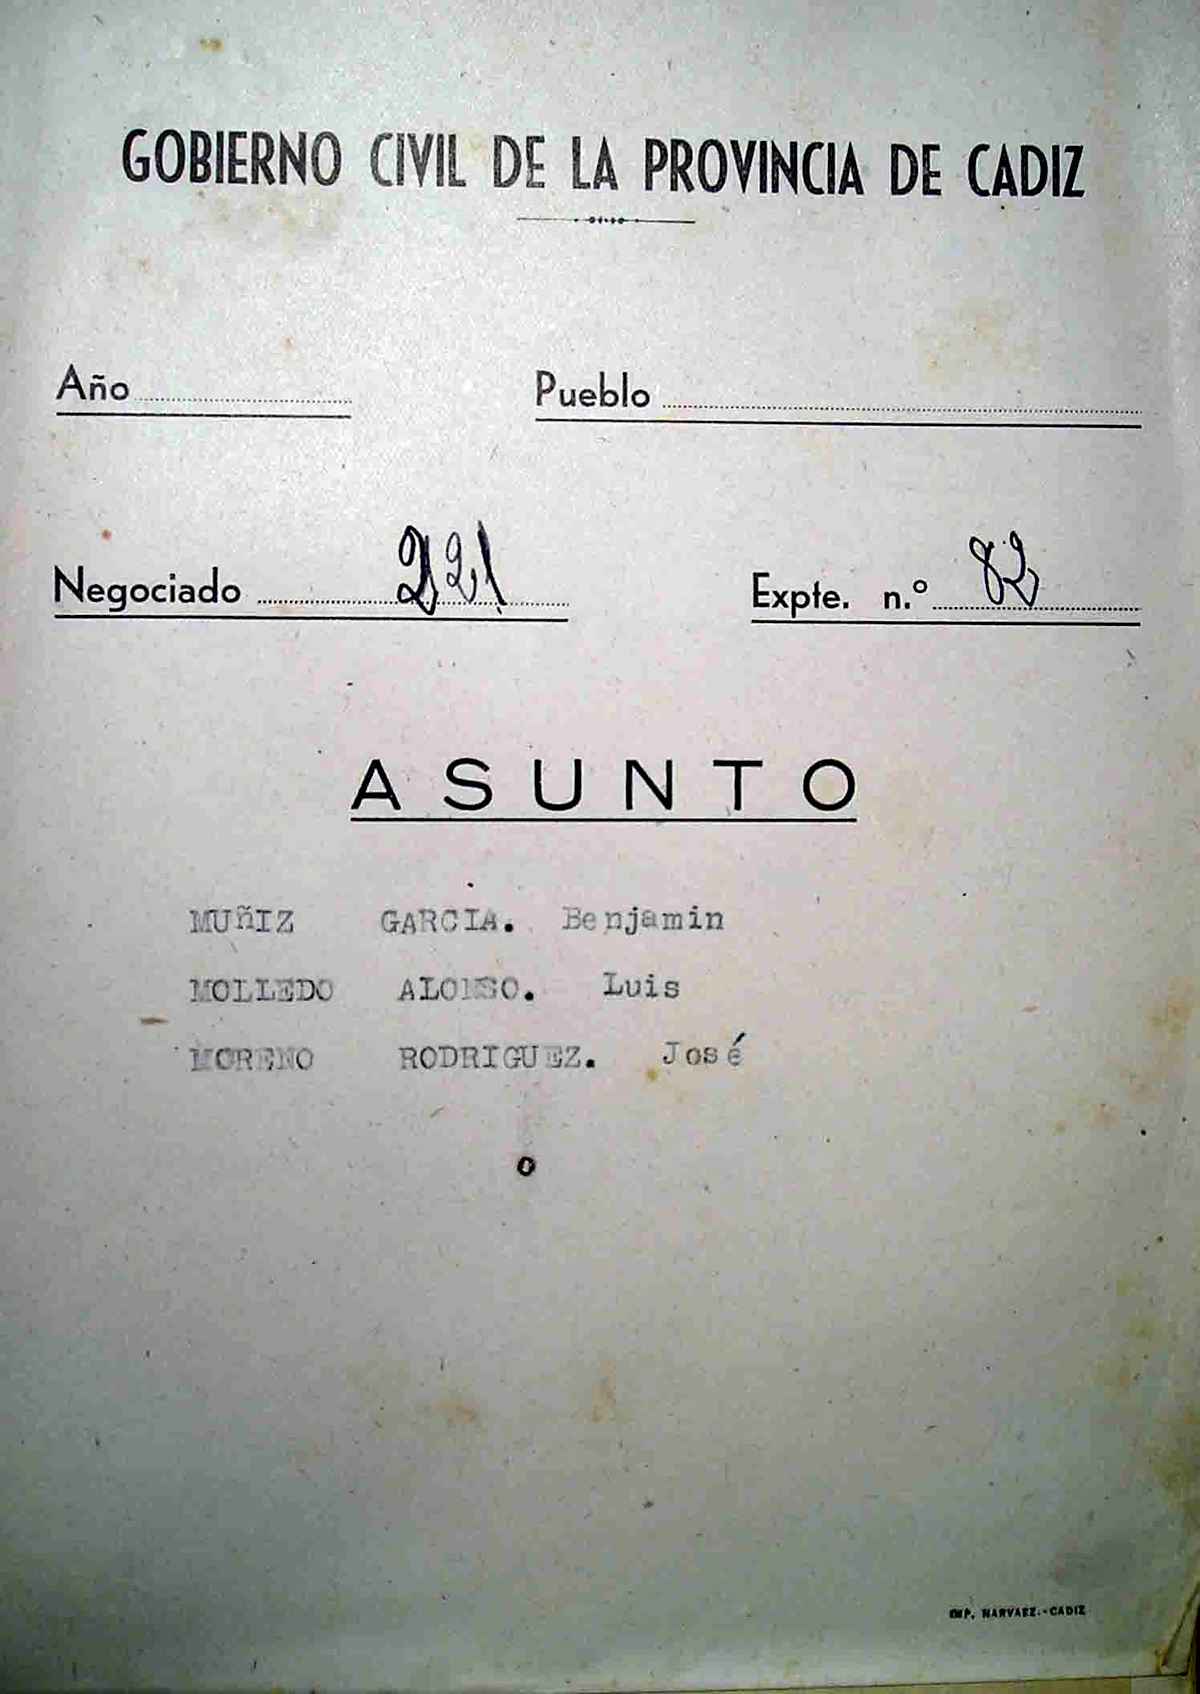 Portada del expediente Nº 82 del Gobierno Civil sobre Benjamín García Álvarez